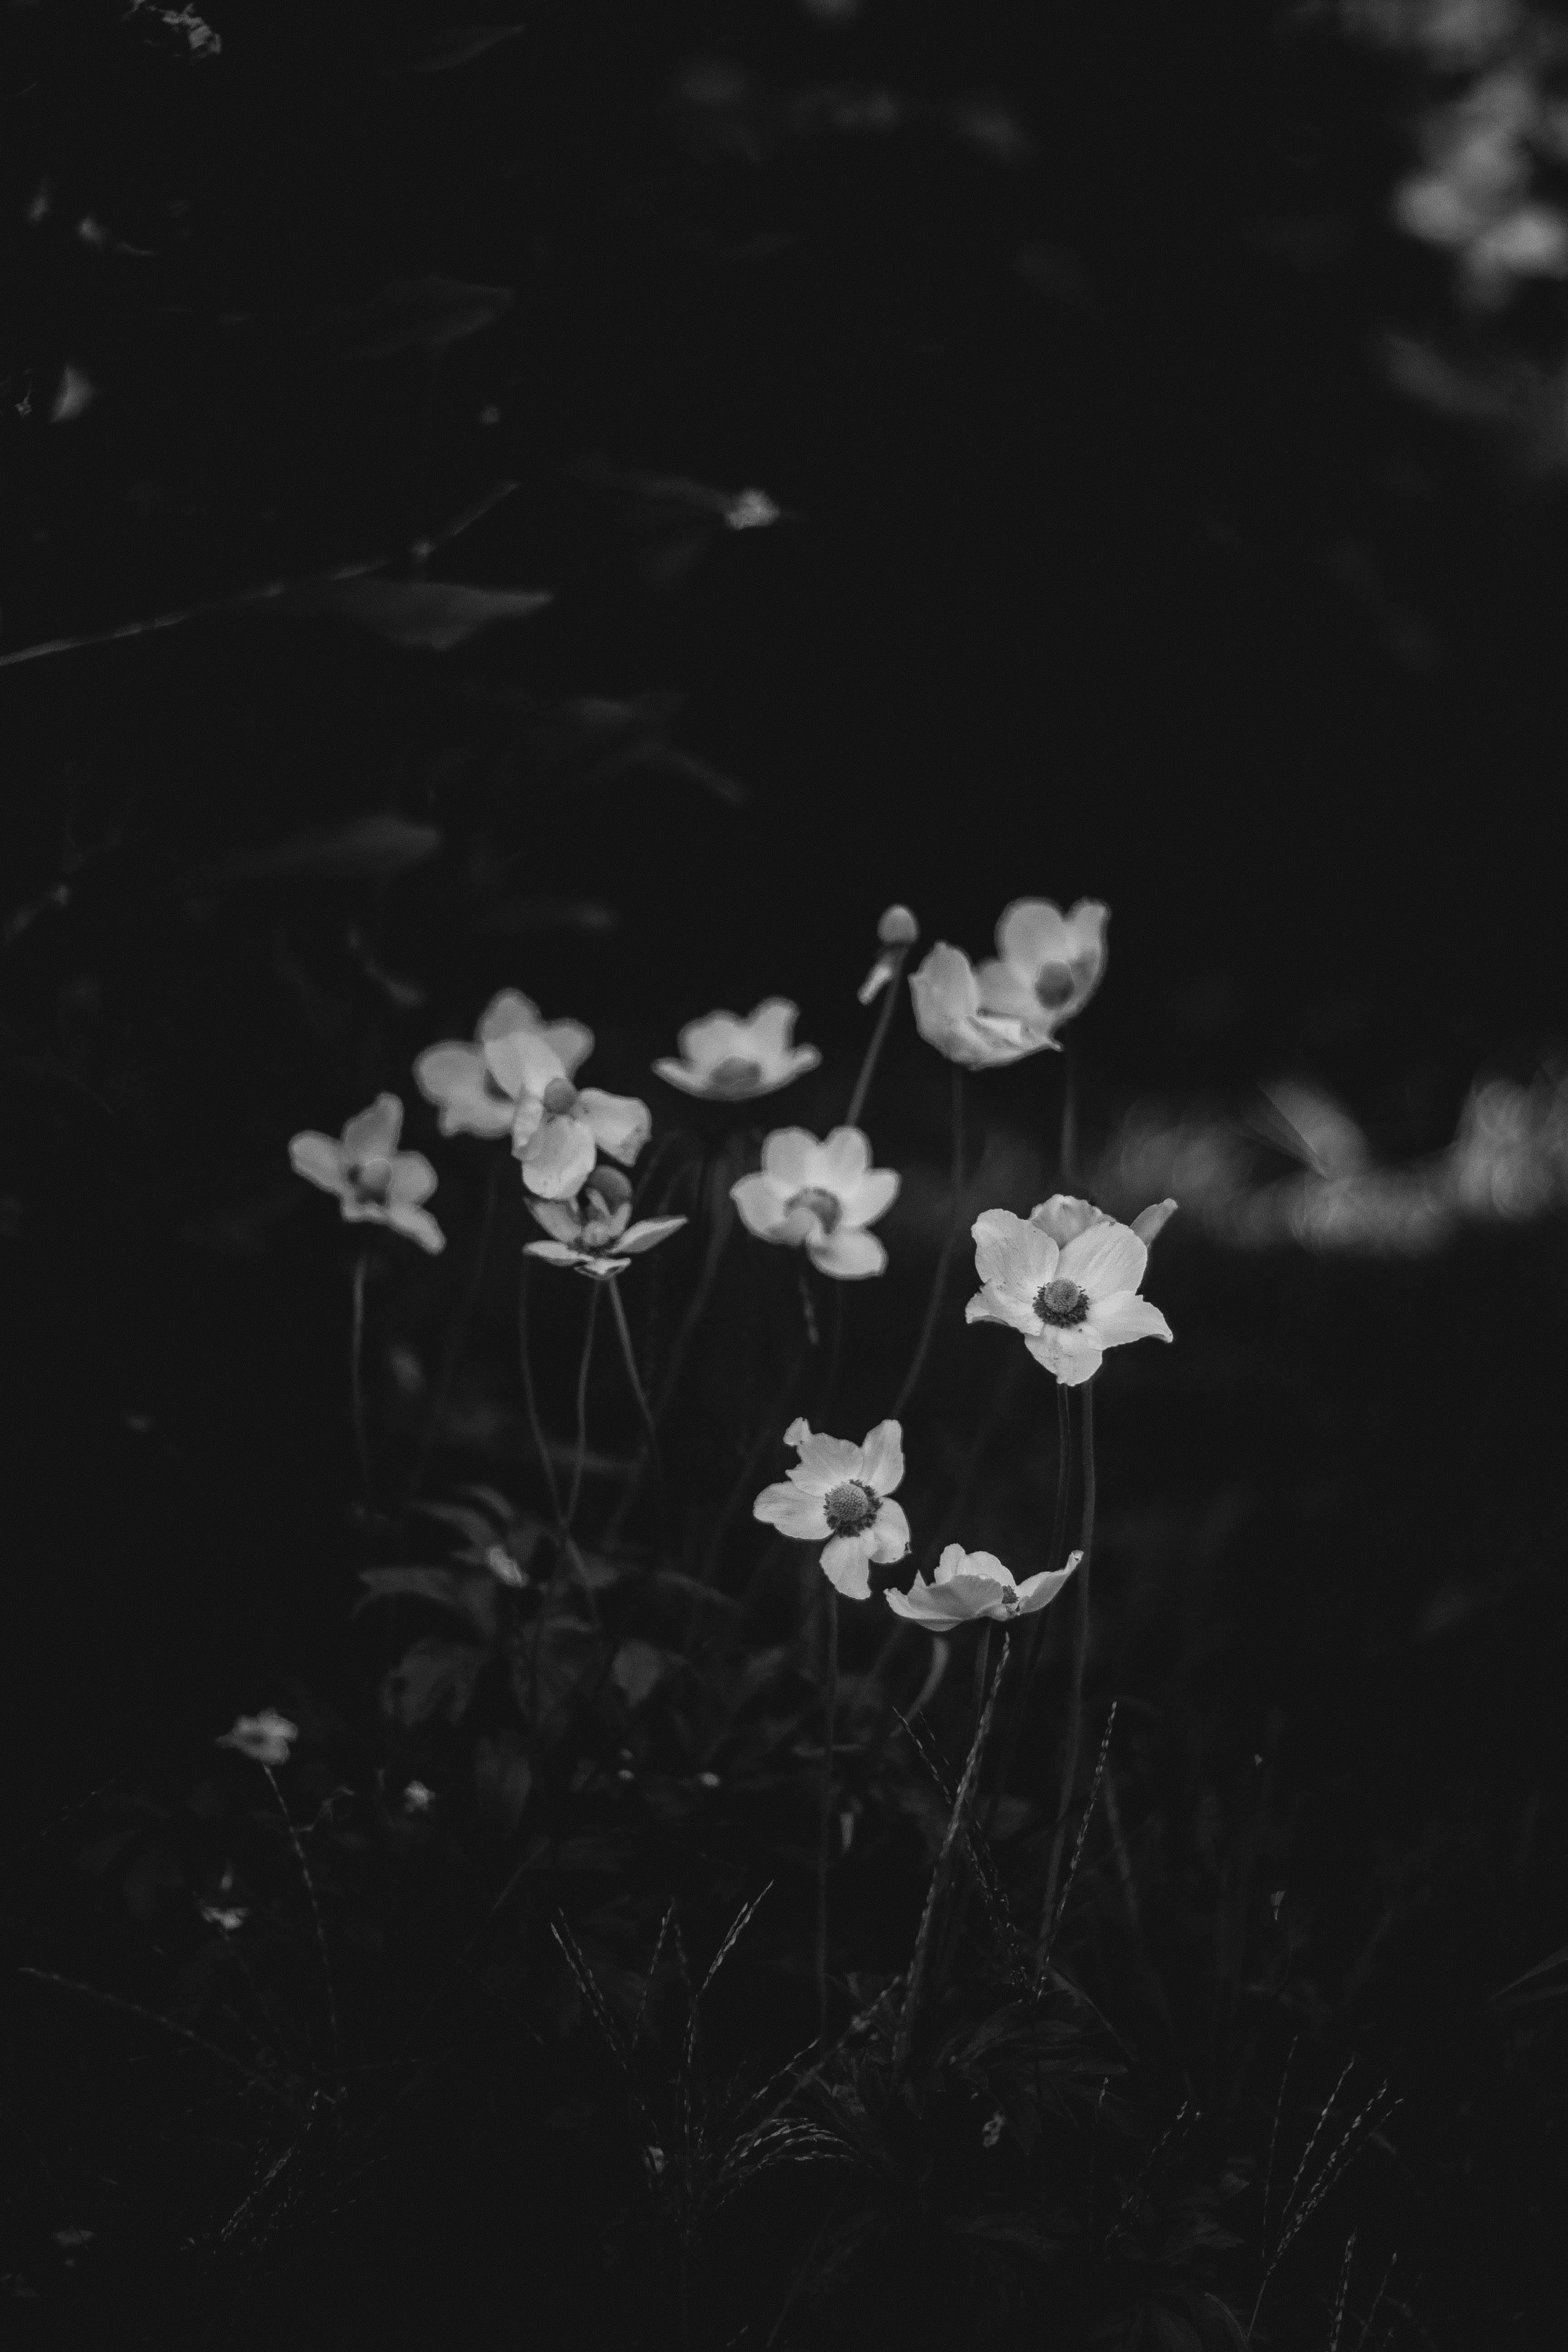 Hoa trắng: Tận hưởng sự thanh lịch và tuyệt đẹp của những bức ảnh hoa trắng tinh khiết. Điểm nhấn này sẽ mang lại cho bạn cảm giác bình yên như trong vườn hoa nơi những bông hoa trắng thơm ngát. Nếu bạn muốn tìm kiếm những hình ảnh đầy cảm hứng về hoa, thì chắc hẳn bạn không nên bỏ qua những bức ảnh này.